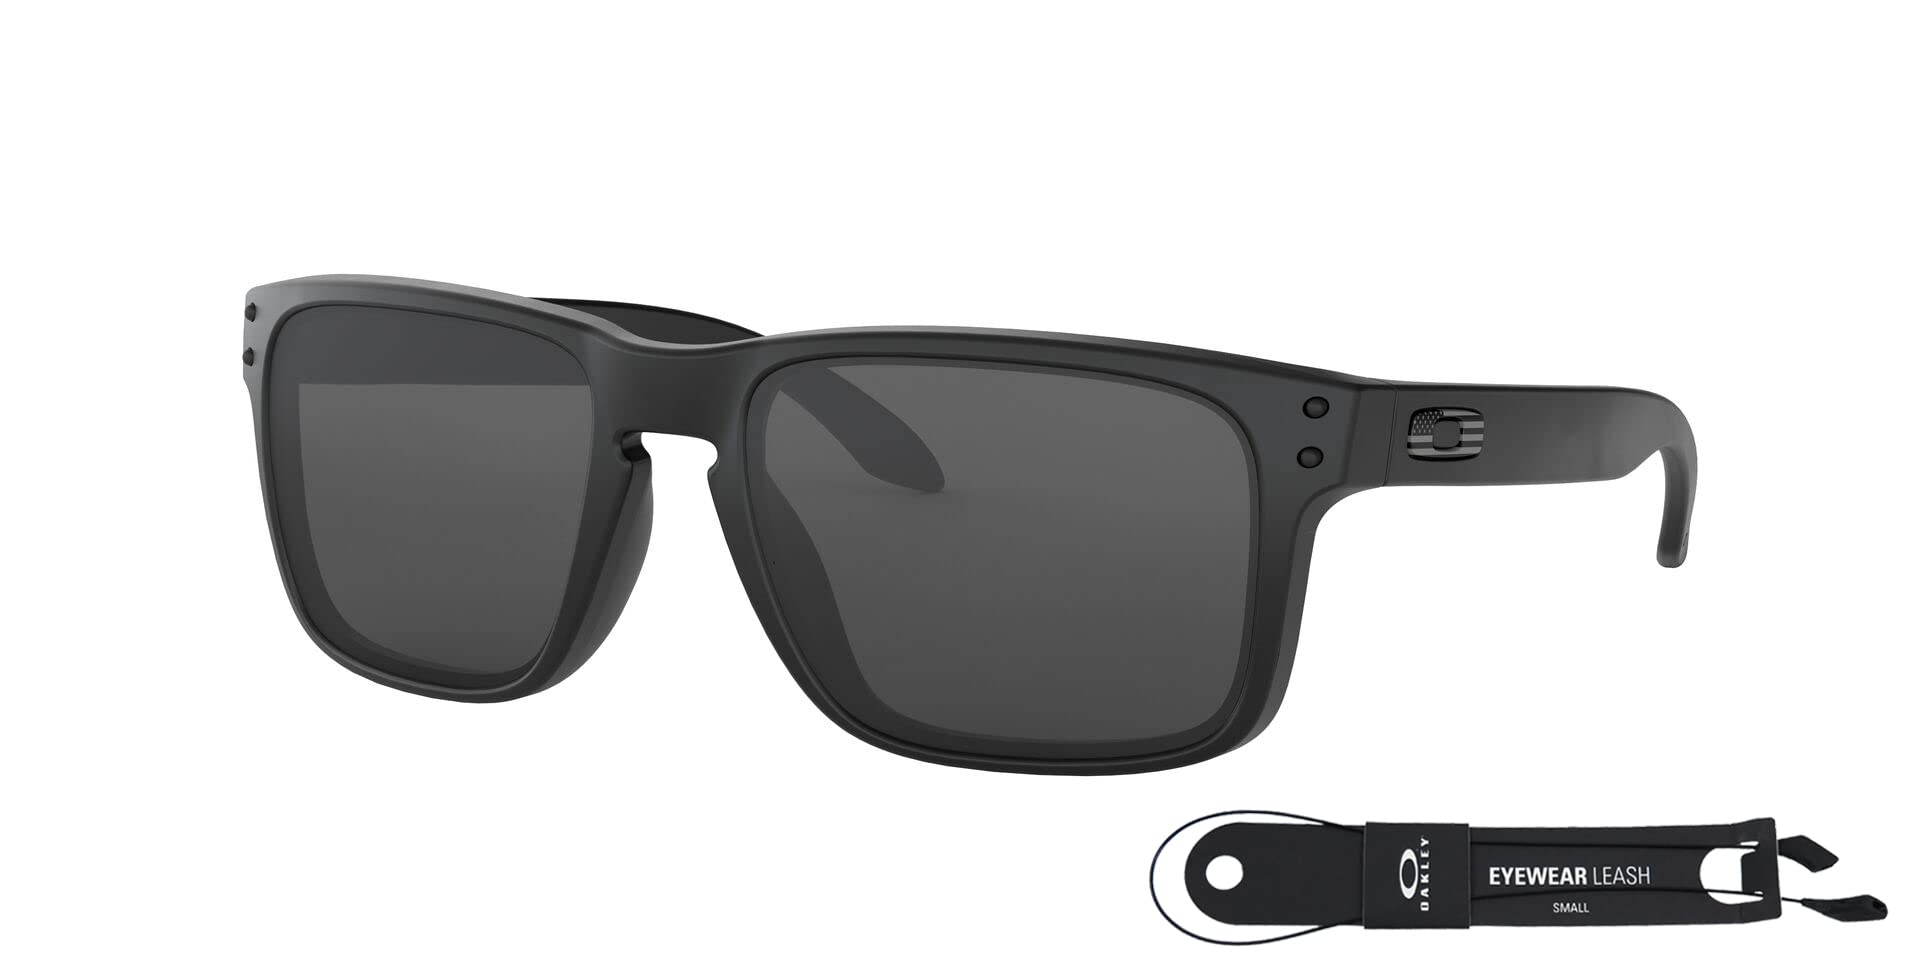 Oakley Holbrook - Square Matte Black Frame Sunglasses For Men